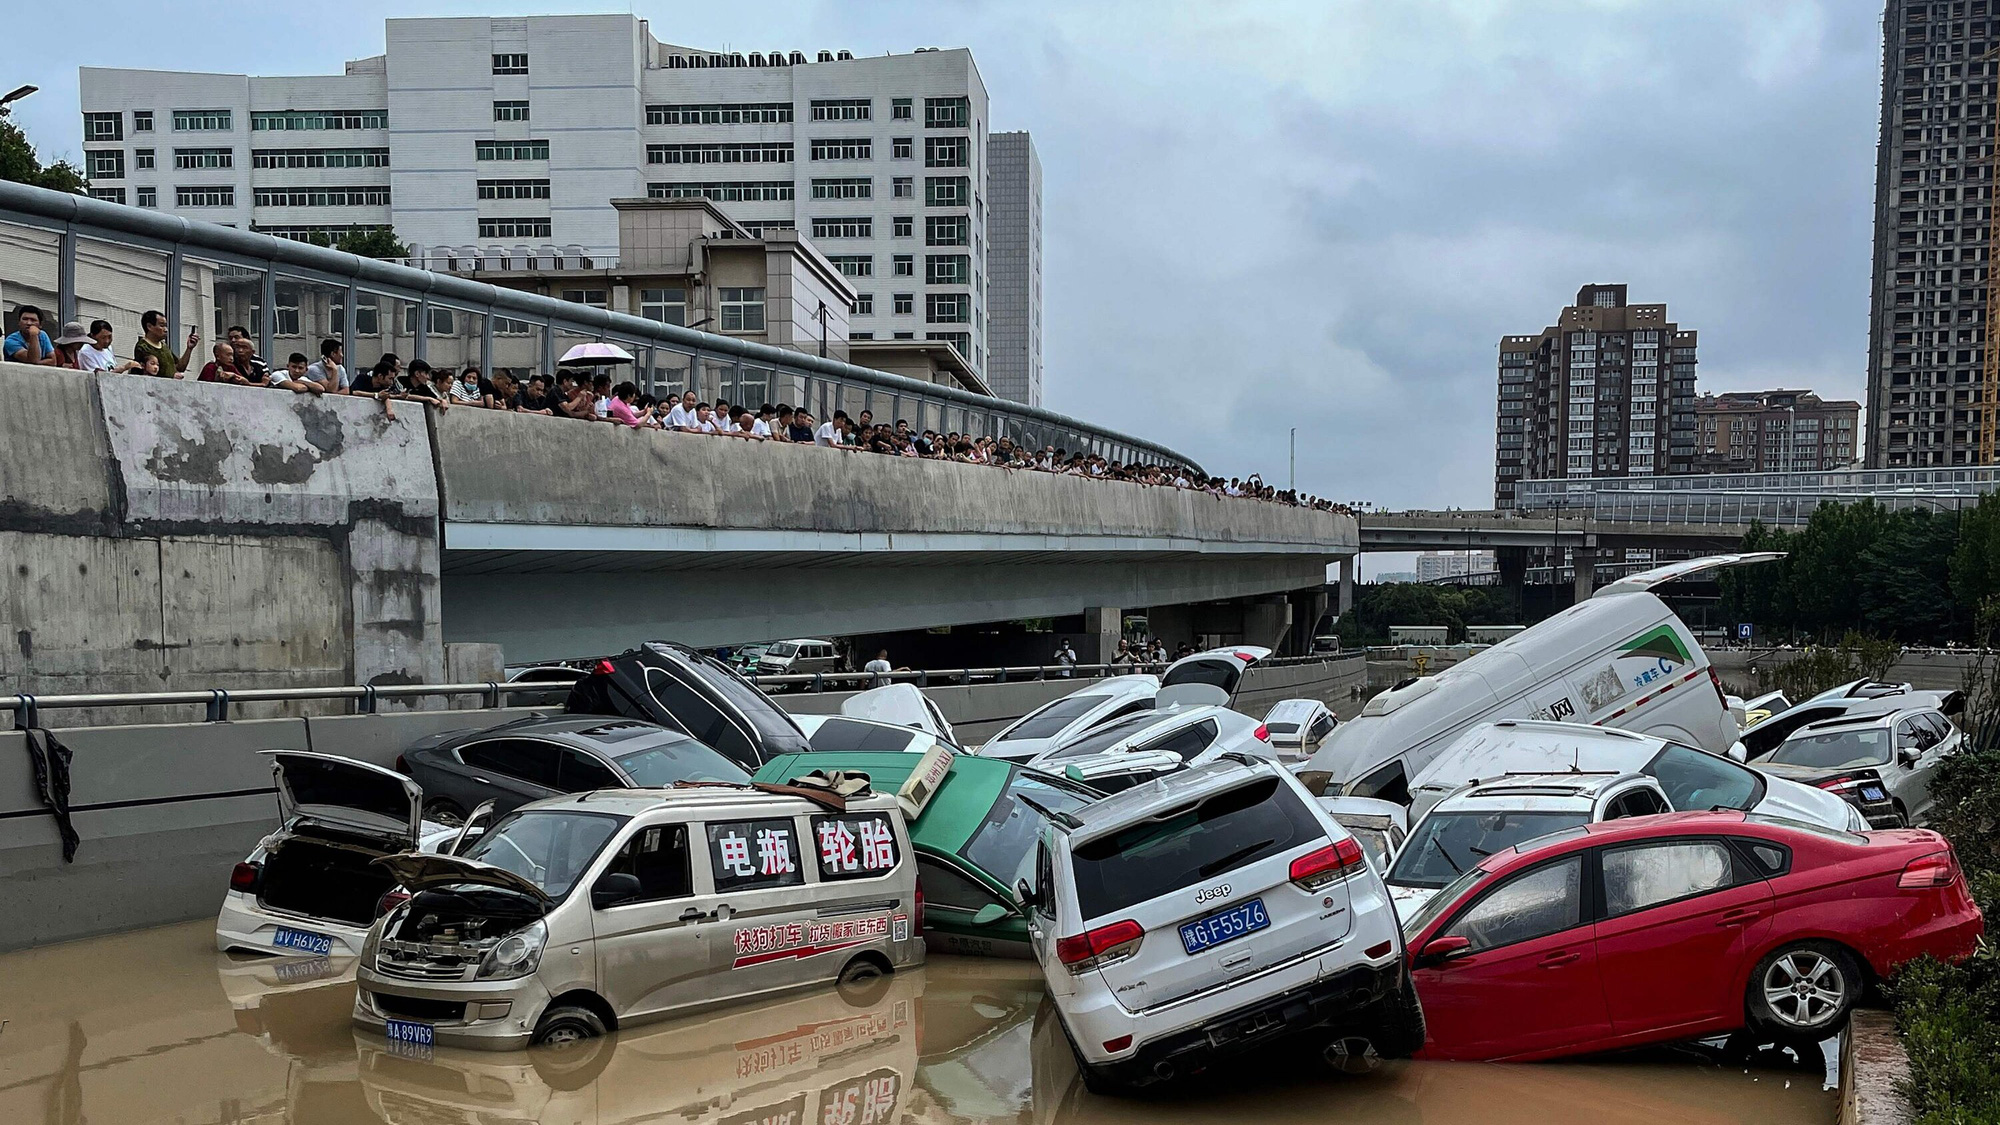 Hình ảnh kinh hoàng về những chiếc ô tô bị lật và những người bị mắc kẹt trong tàu điện ngầm và đường phố ngập lụt ở Trung Quốc đã tràn ngập trên mạng xã hội trong những ngày qua. Ảnh: @AP.